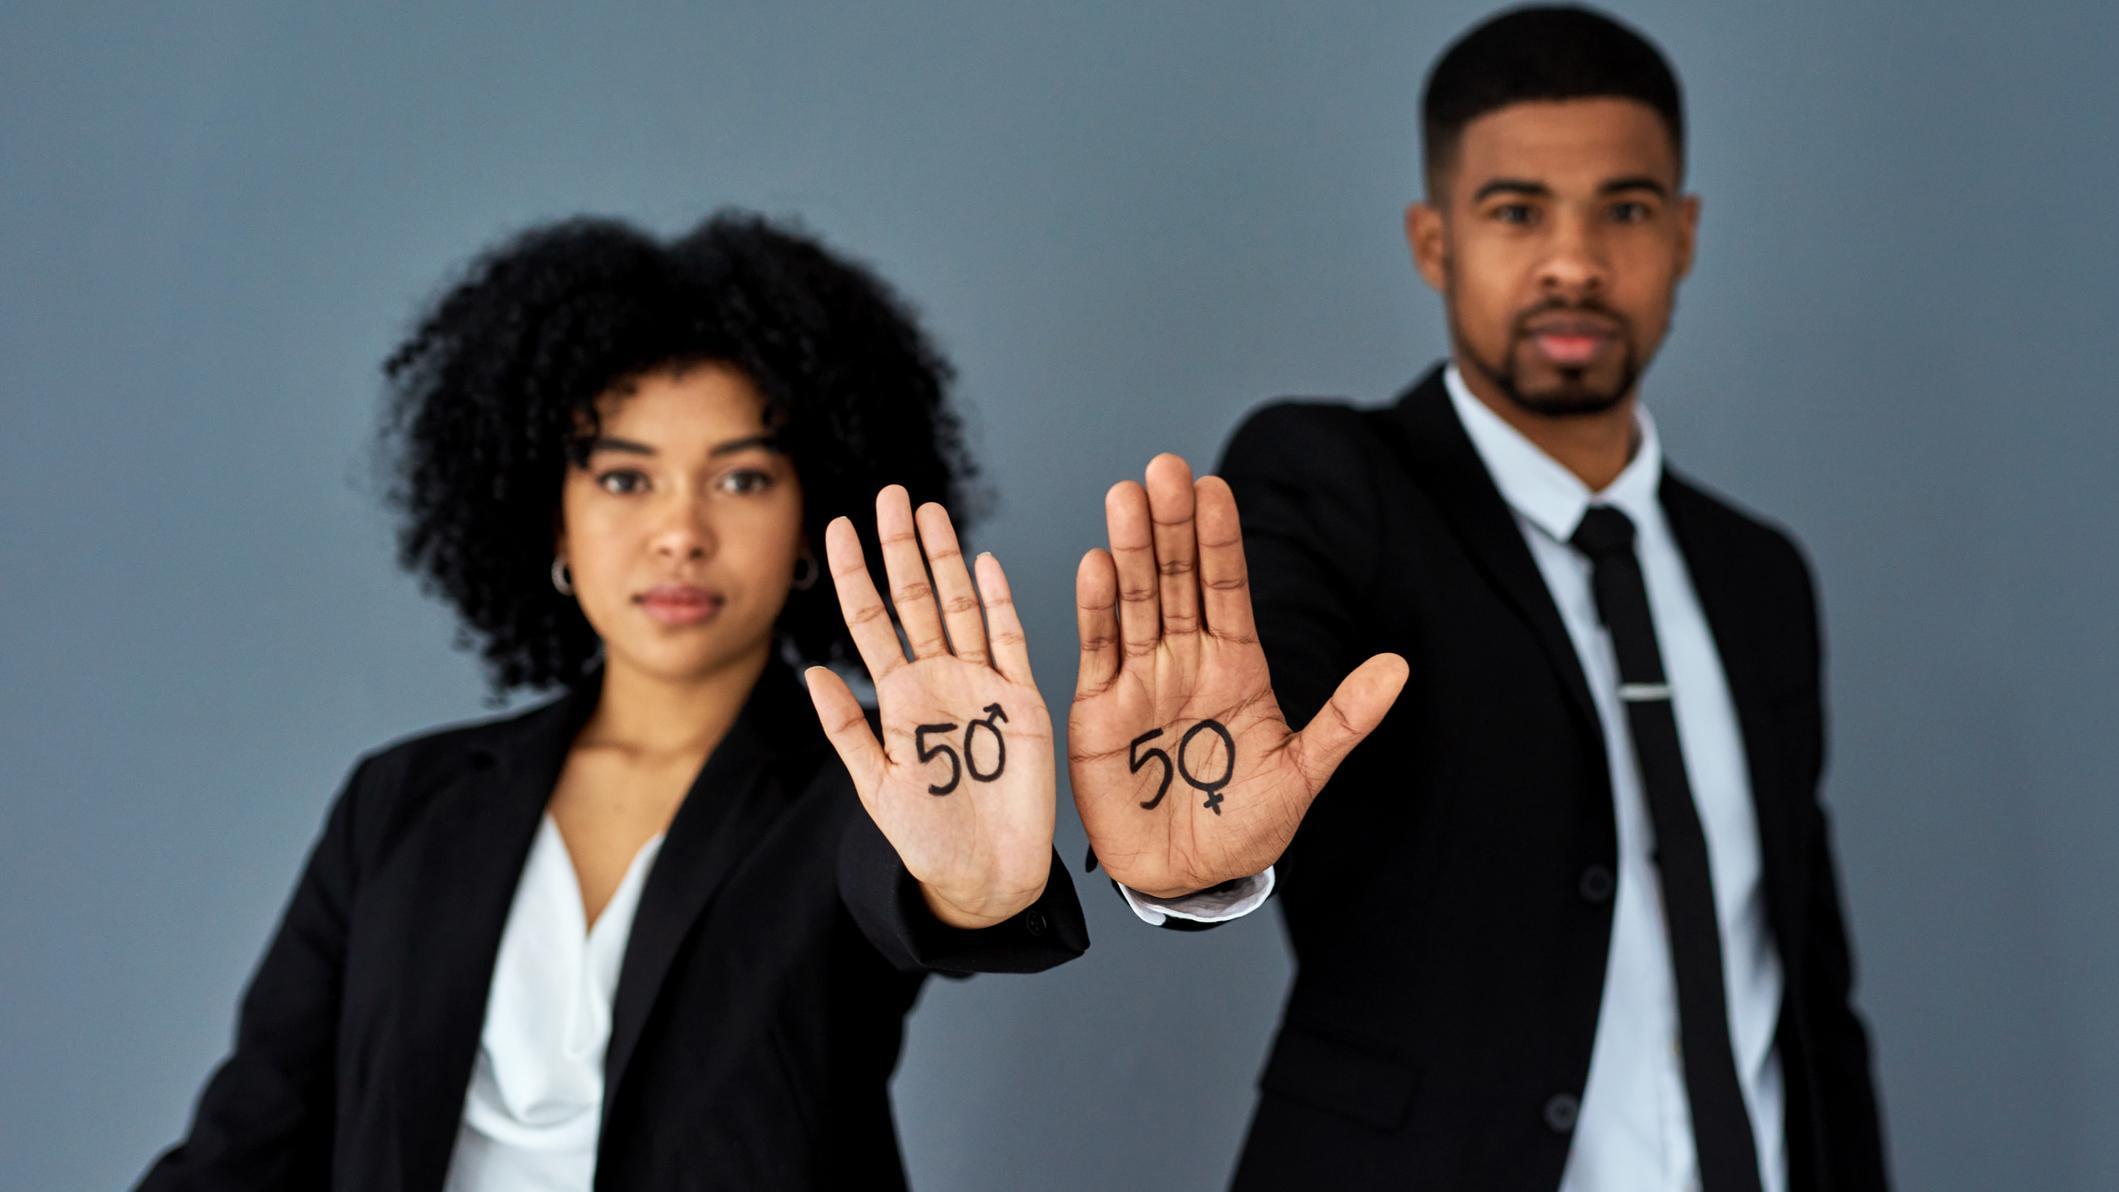 Homem e mulher jovens negros de terno com a mão estendida onde está escrito 50